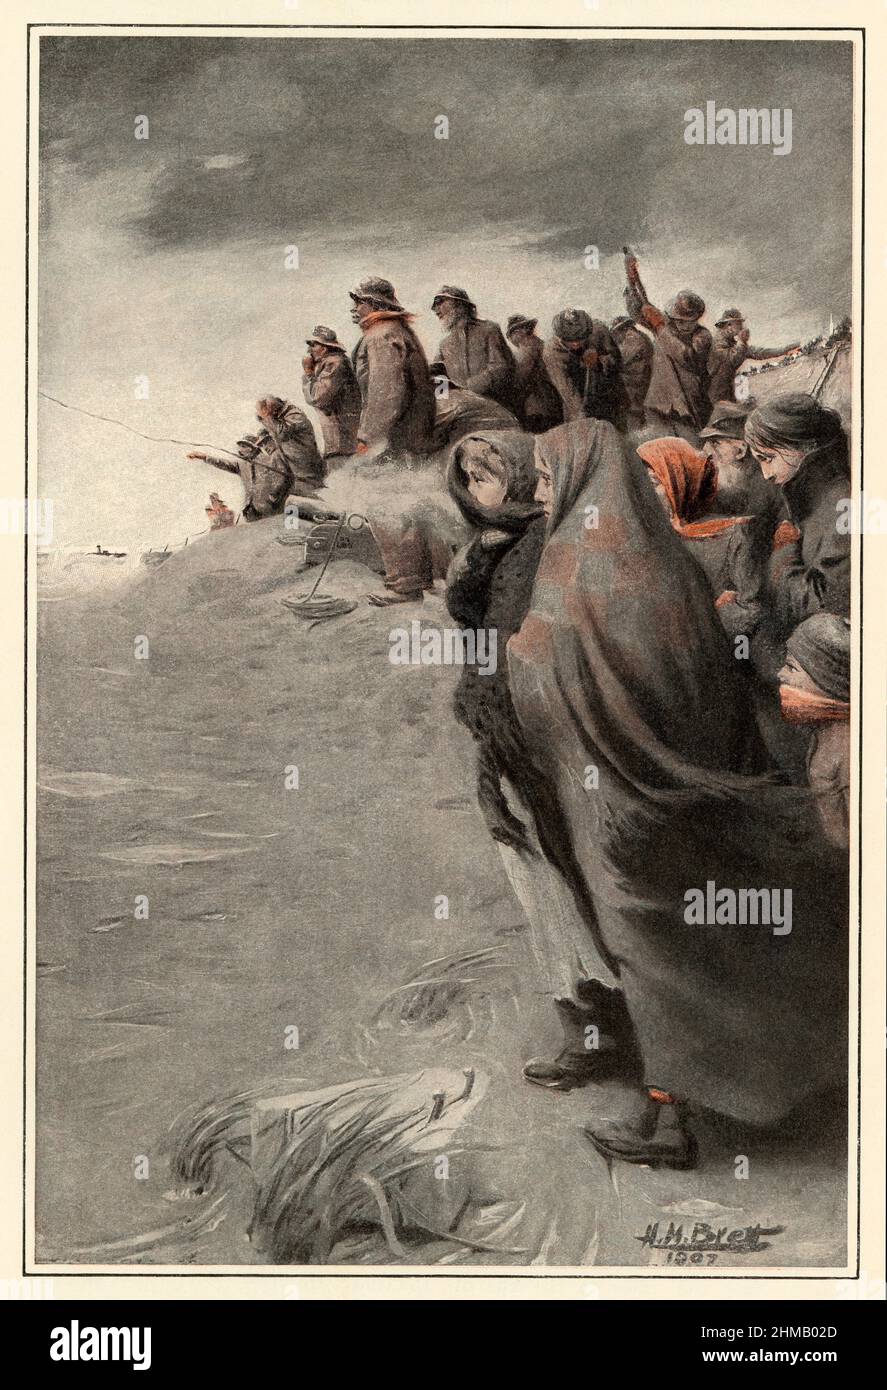 La tripulación DEL Servicio DE Salvación de Vida DE LOS EE.UU. Que tiró una línea a un barco naufragó frente a Cape Cod, a principios de 1900s. Duotona de una ilustración de H. M. Brett Foto de stock